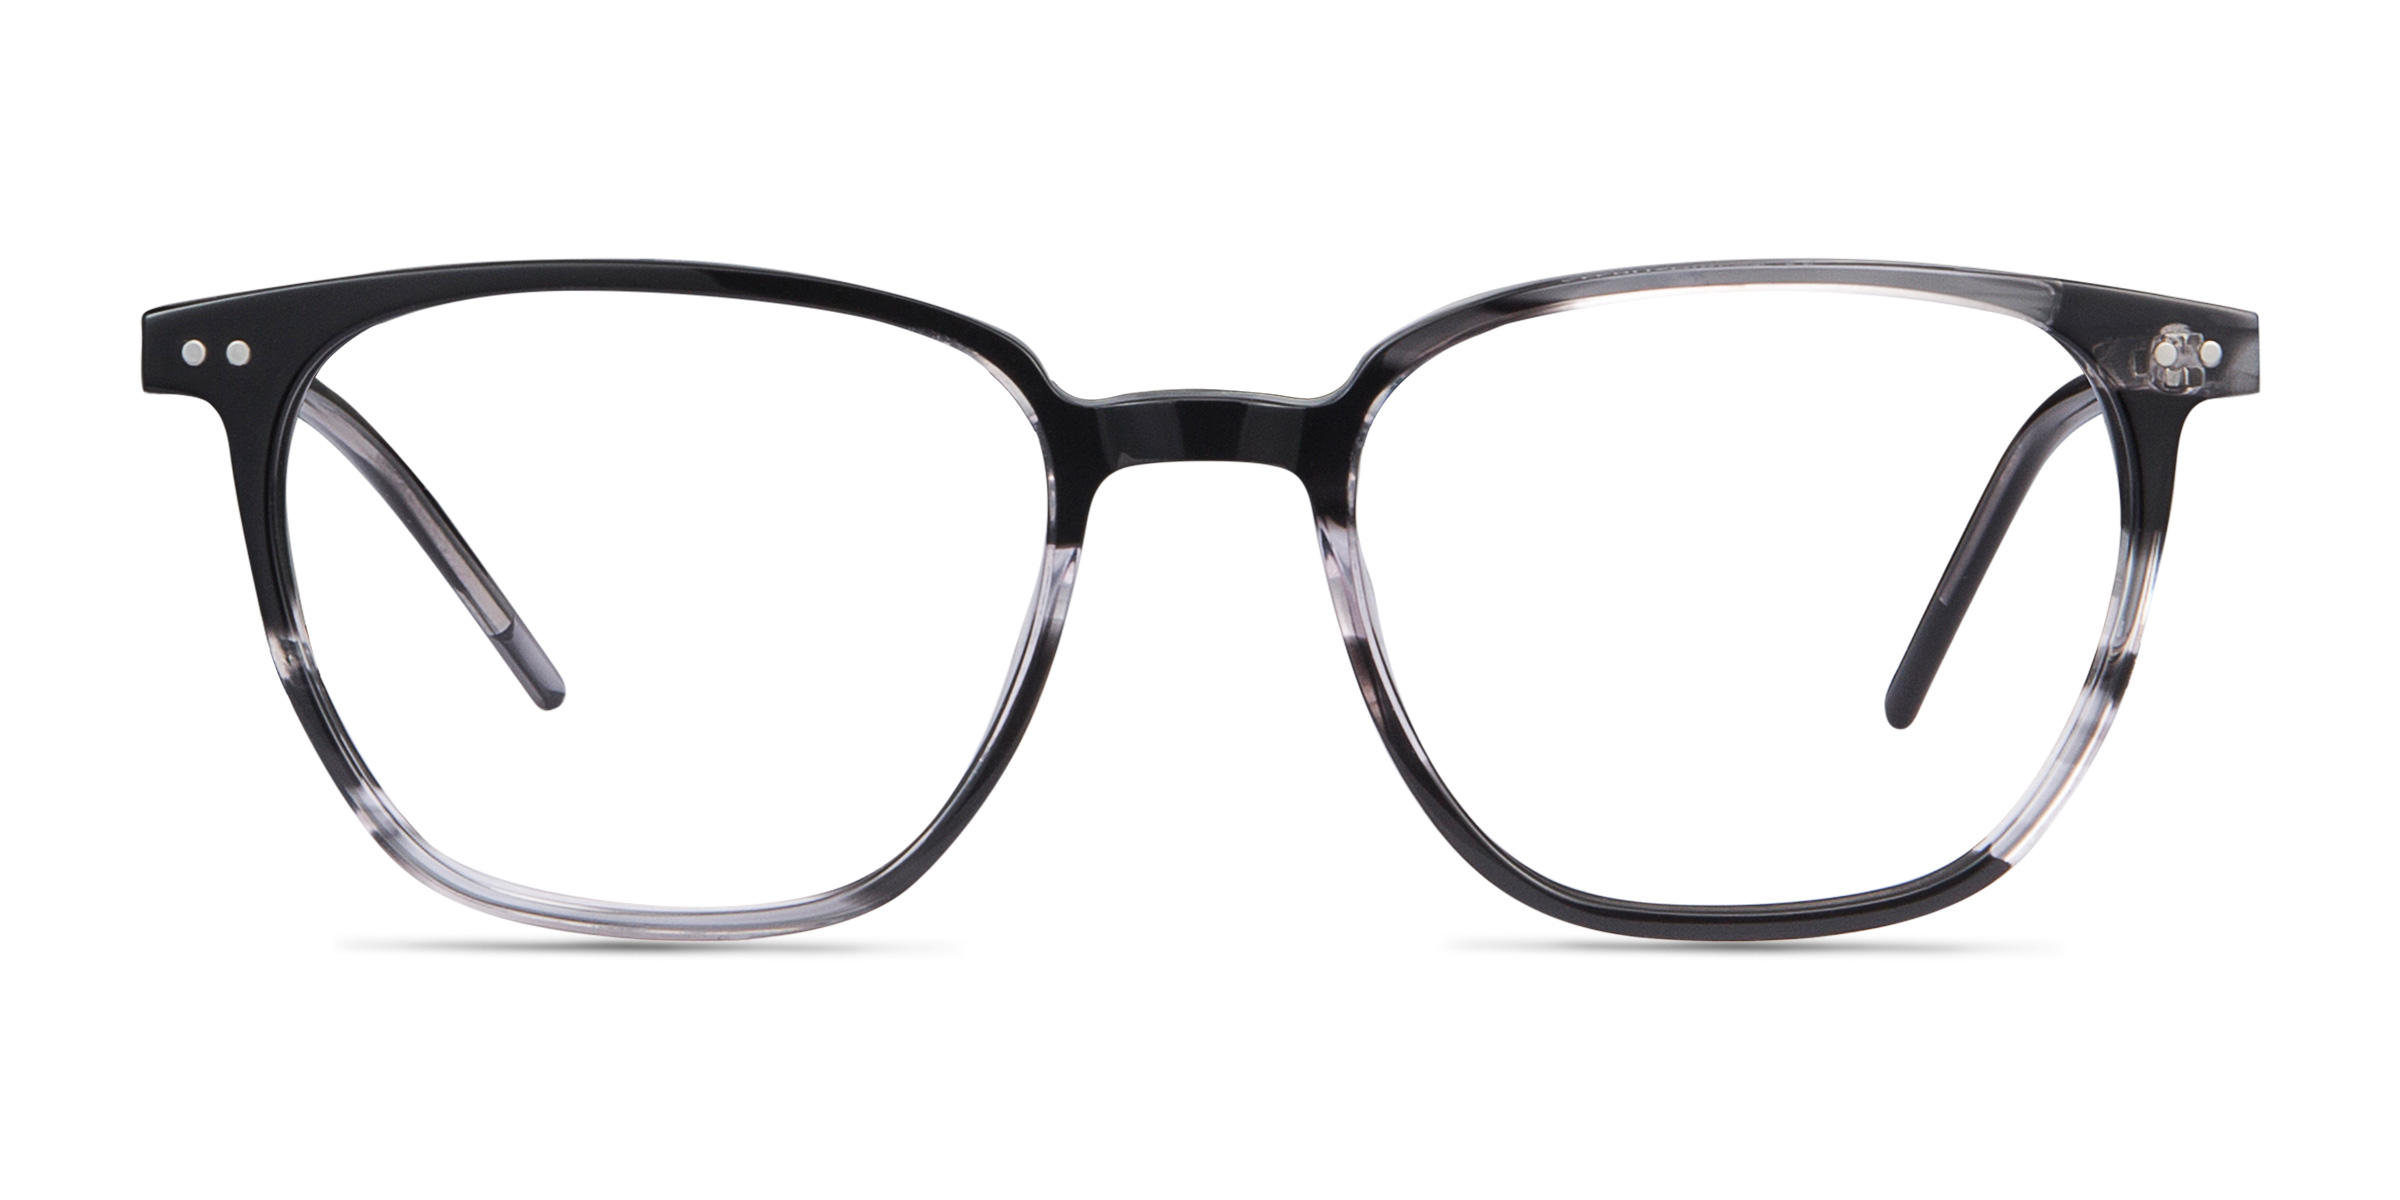 Regalia Square Gray Striped Full Rim Eyeglasses | Eyebuydirect